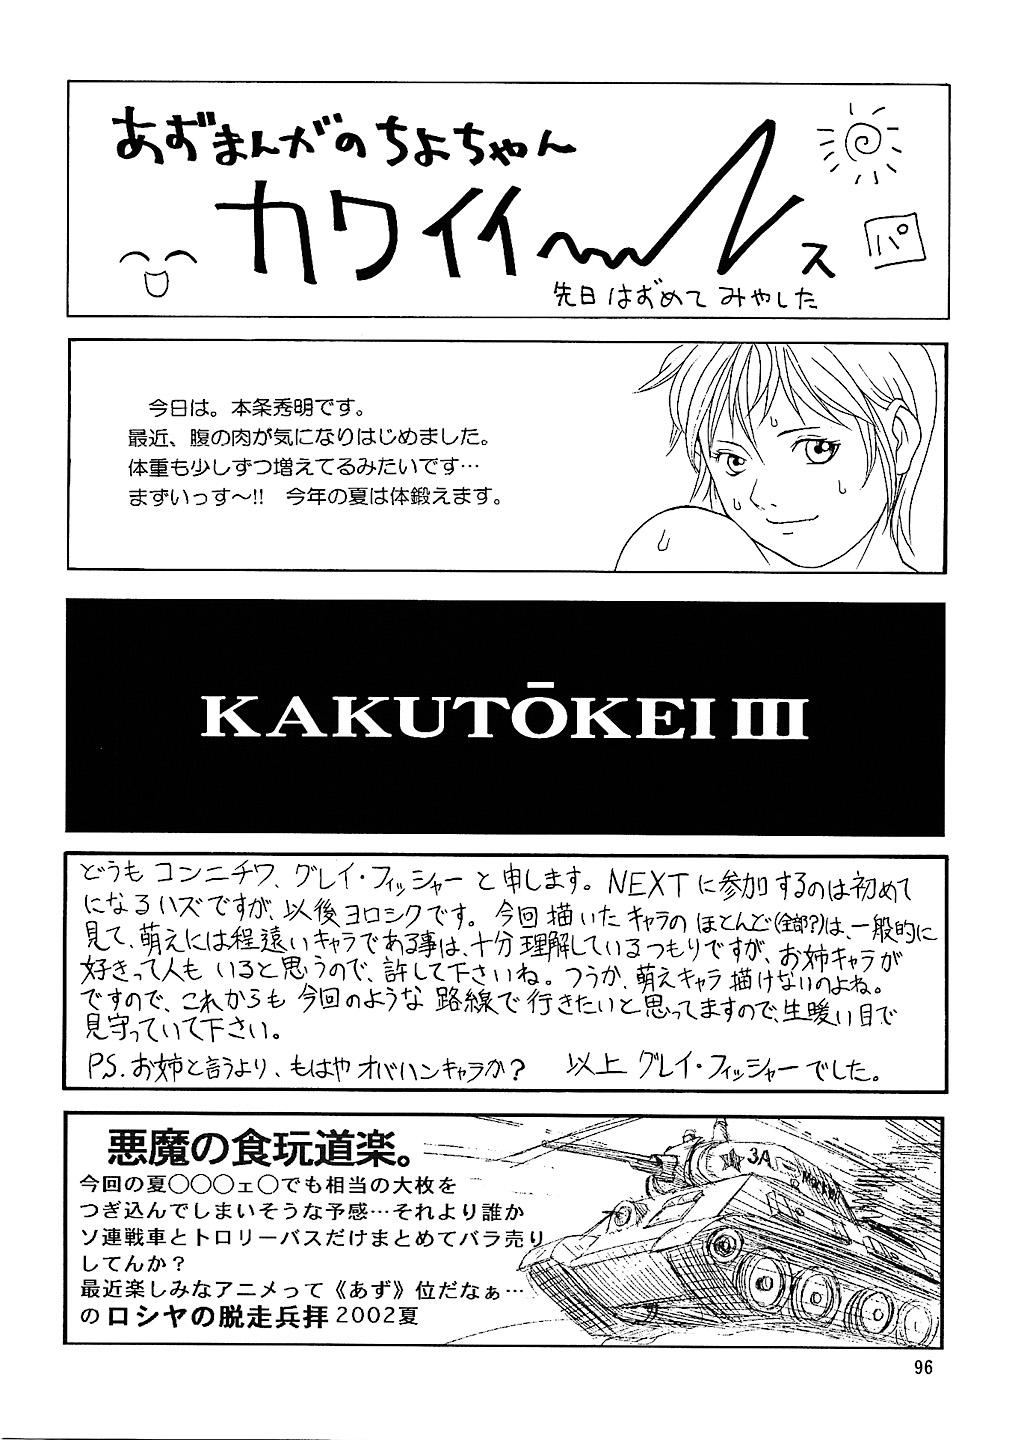 Next Climax Magazine 11 - Kakutokei III 94